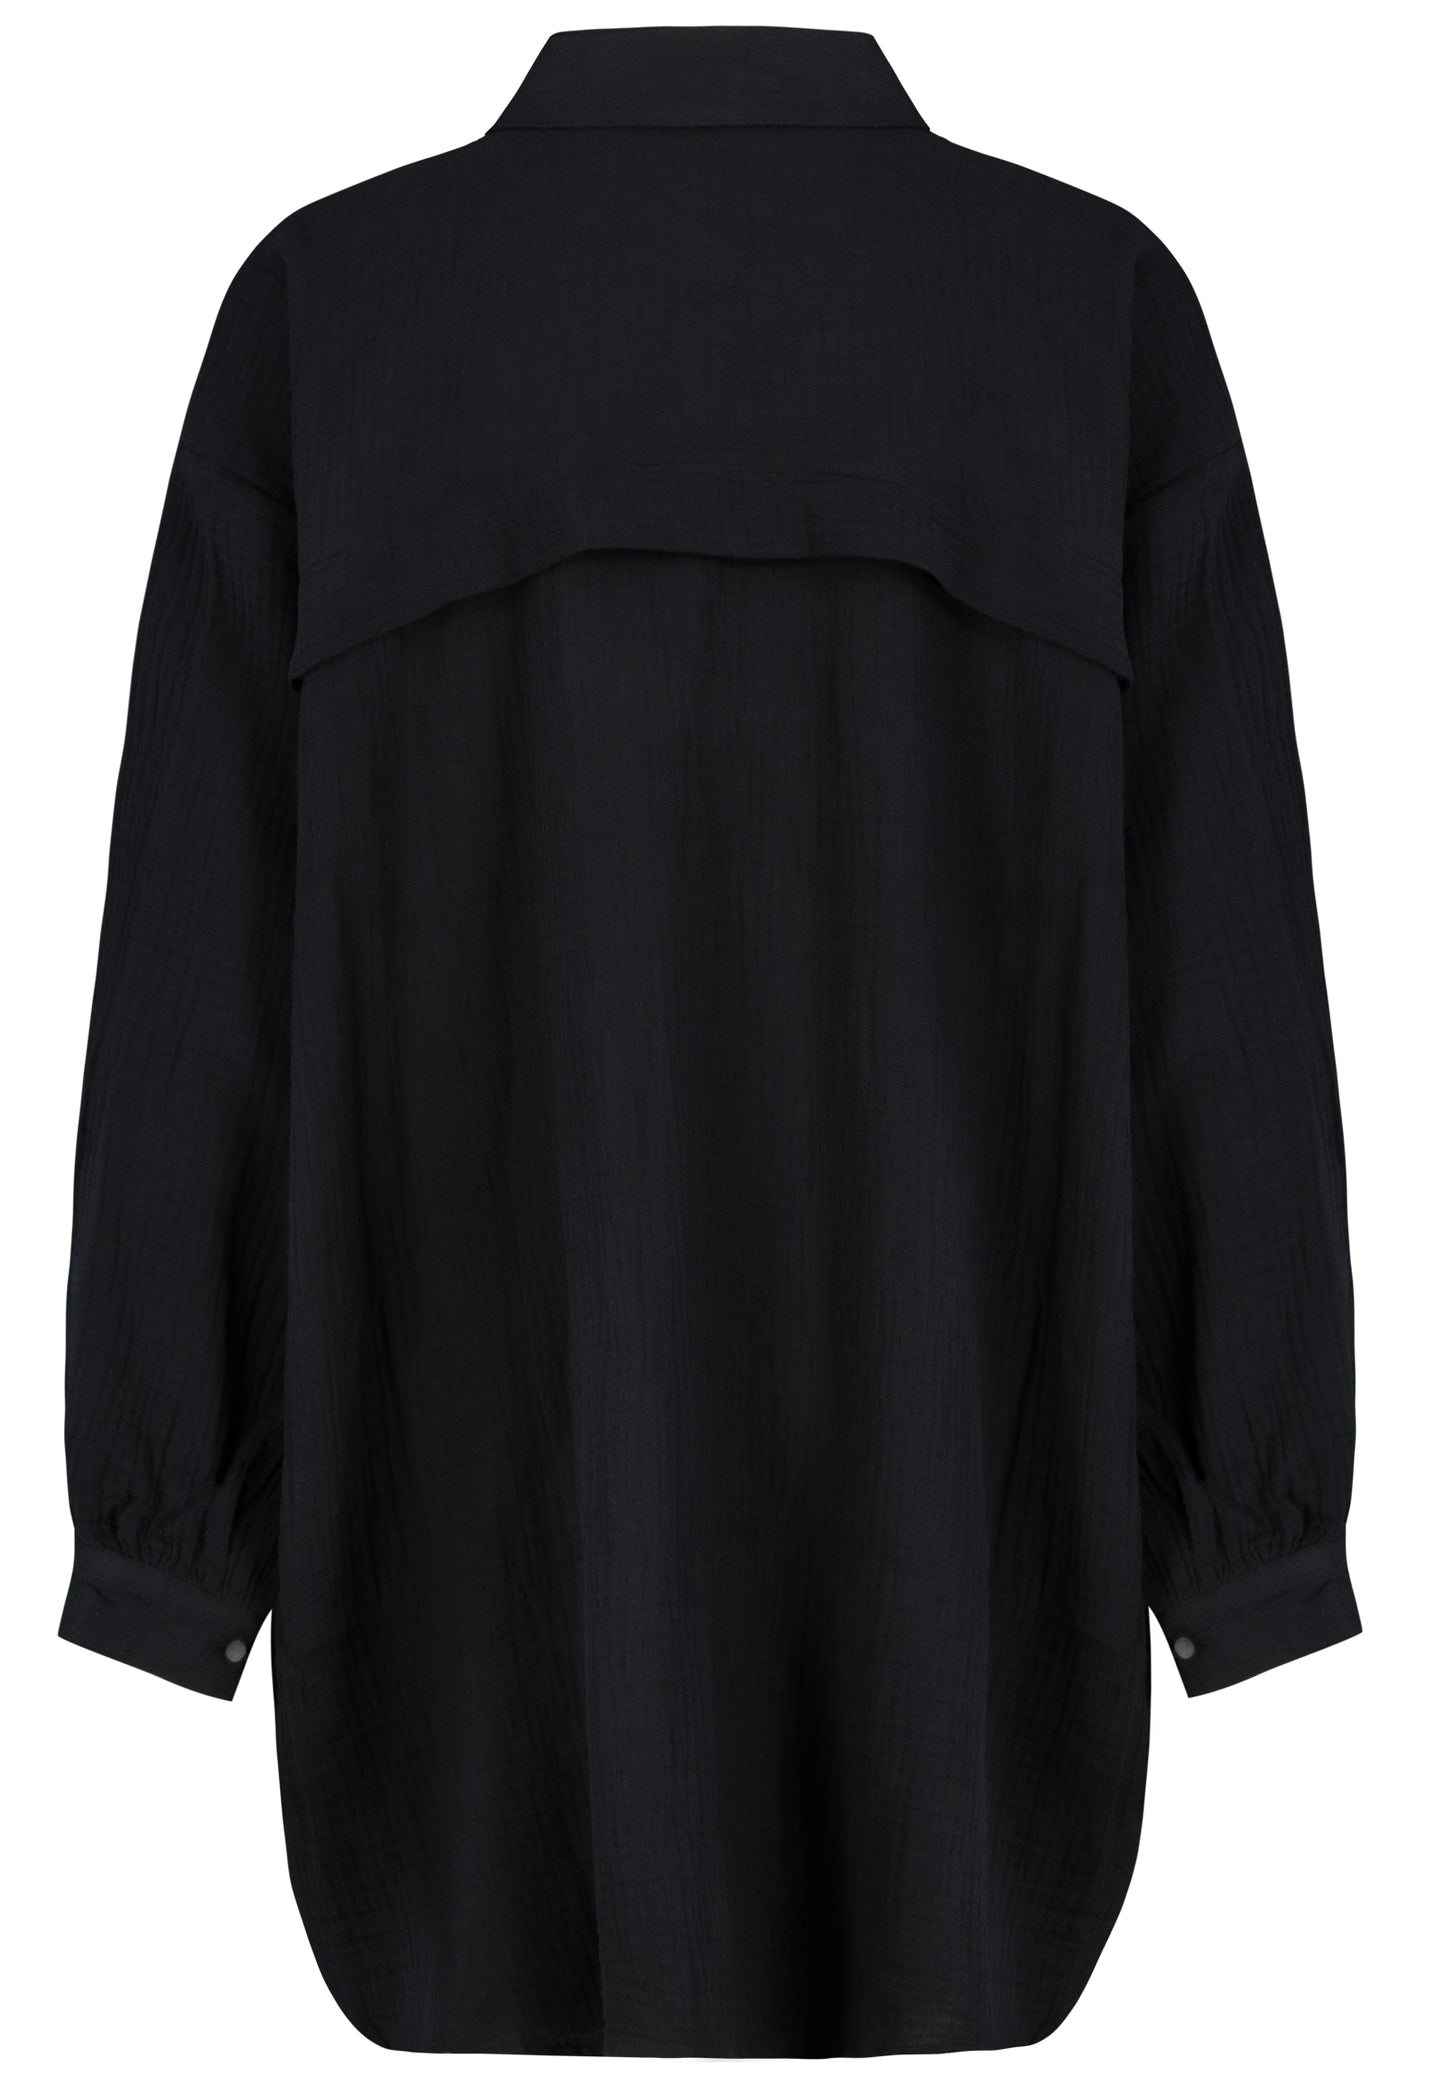 DOB LONG-Bluse, Oversize, überschni, black